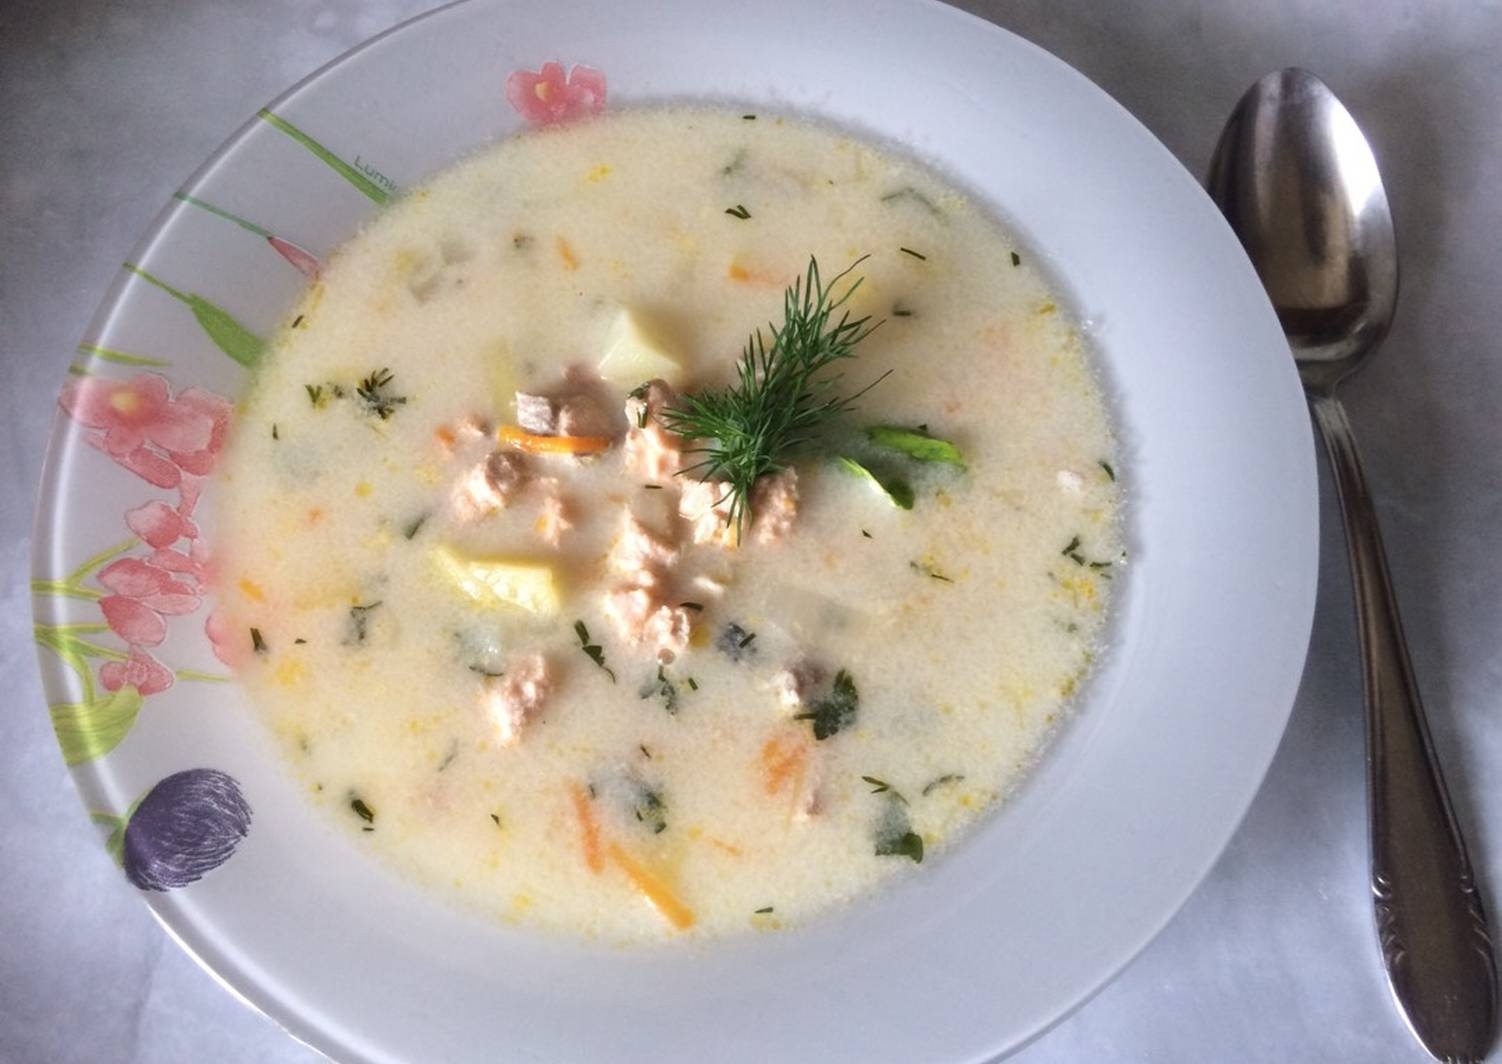 Рецепт супа с минтаем с фото пошагово